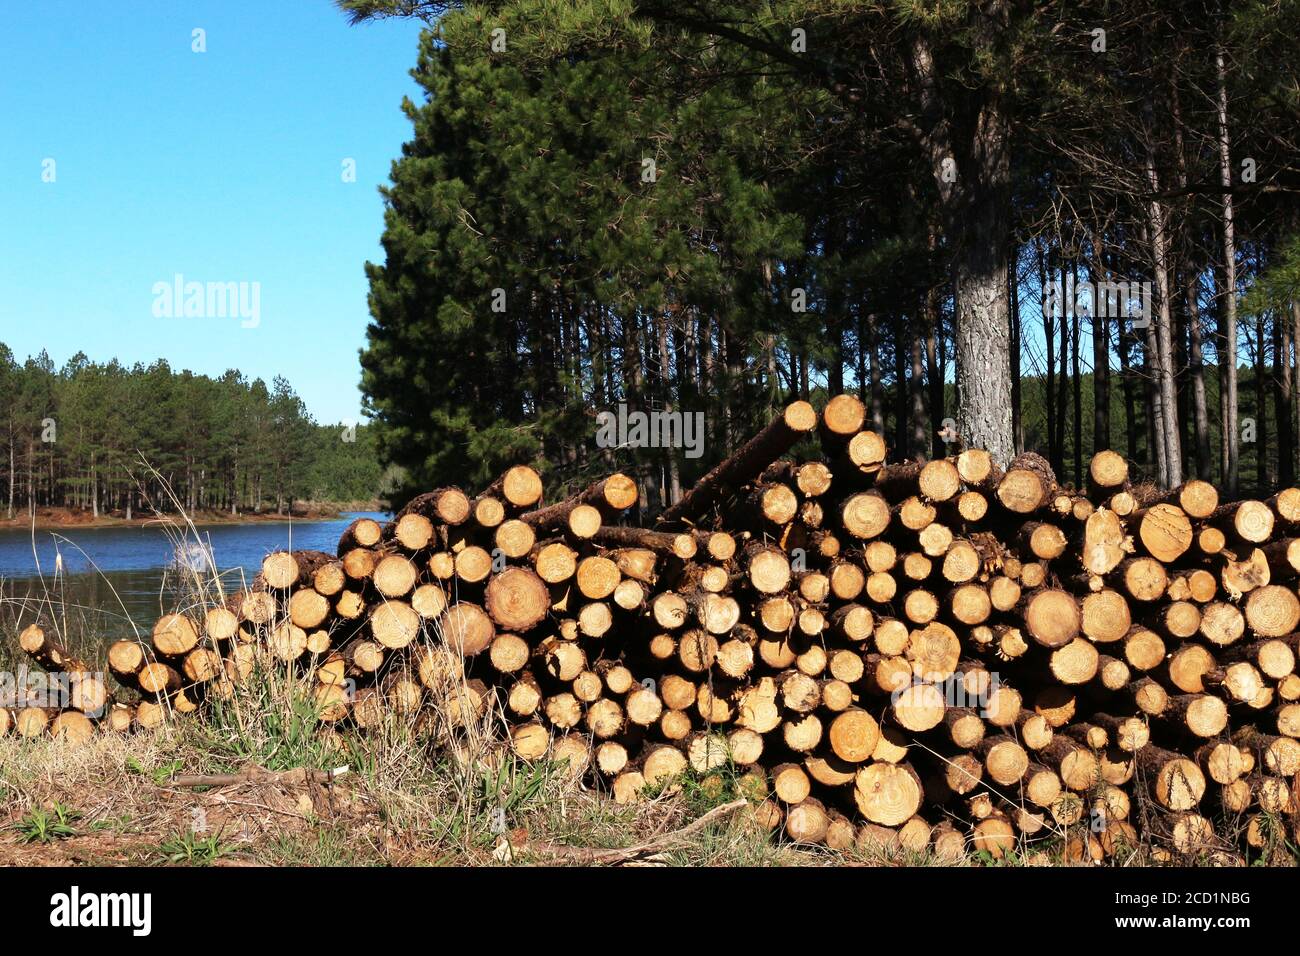 Bois de reboisement - Pinus Elliotis. De grandes plantations de reboisement et du bois déjà coupé pour la vente. Banque D'Images